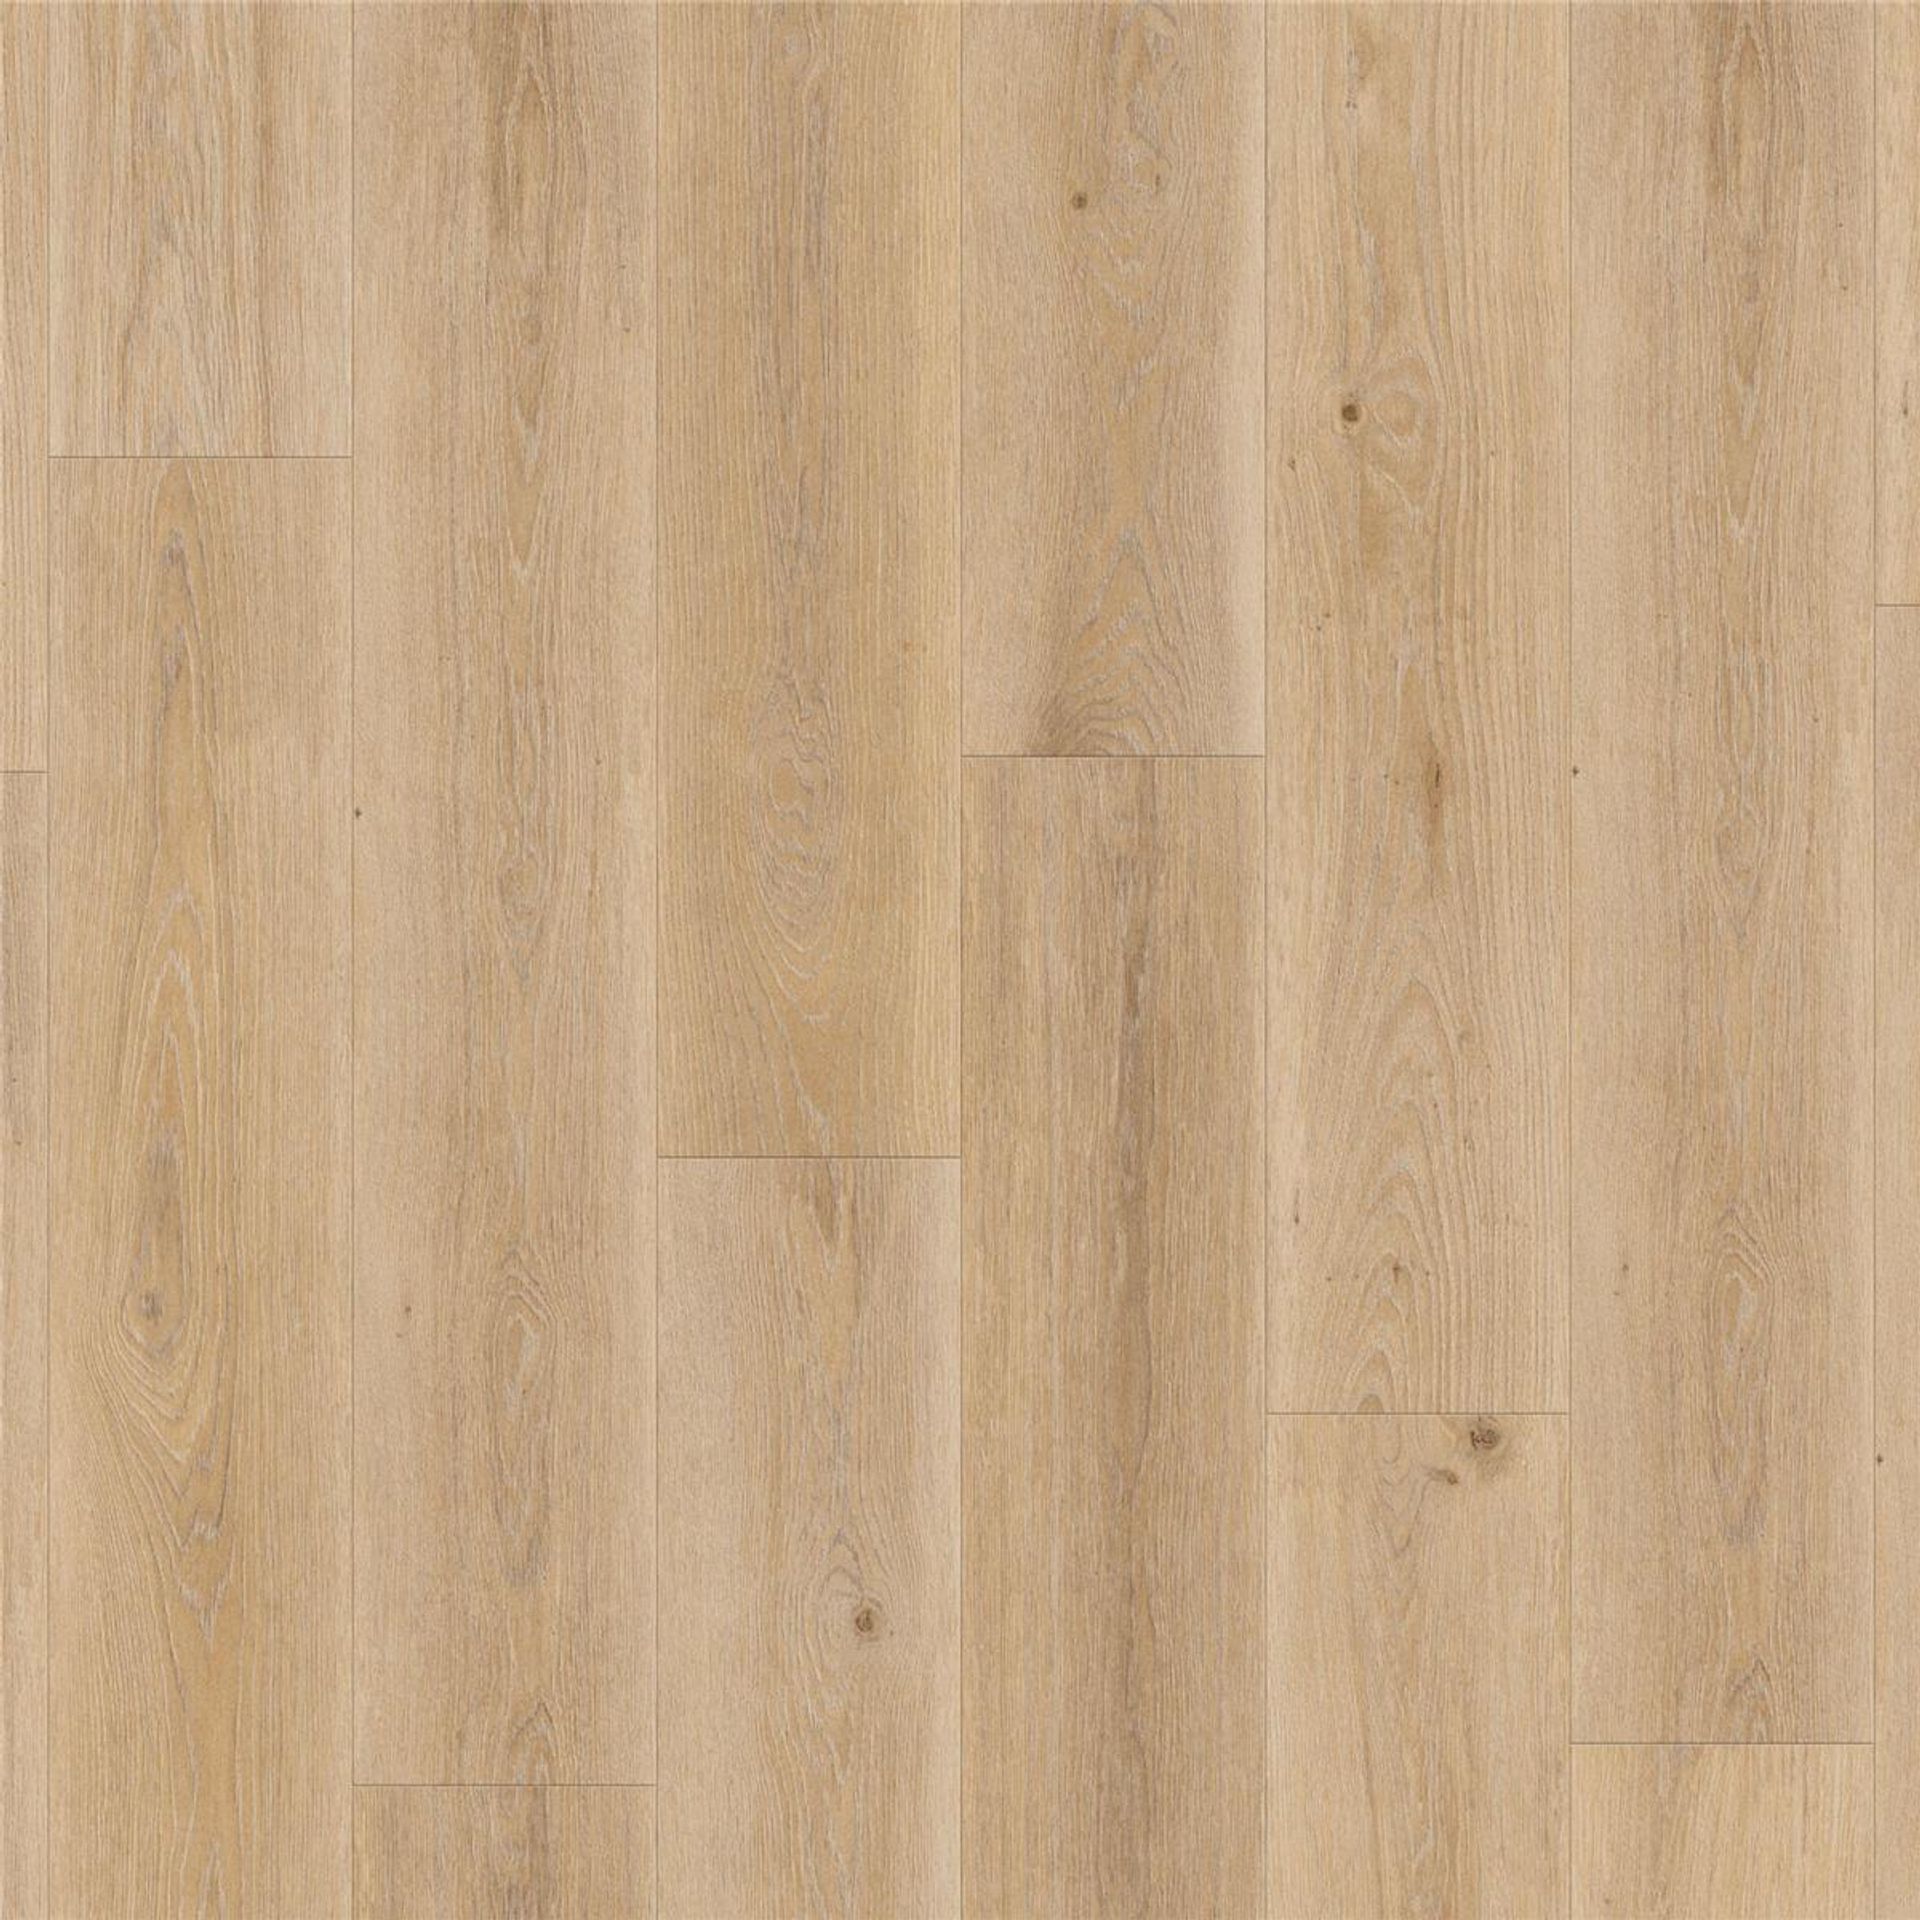 Designboden AUTHENTICS-Highland Oak-Golden Planke 121,1 cm x 19,05 cm - Nutzschichtdicke 0,55 mm